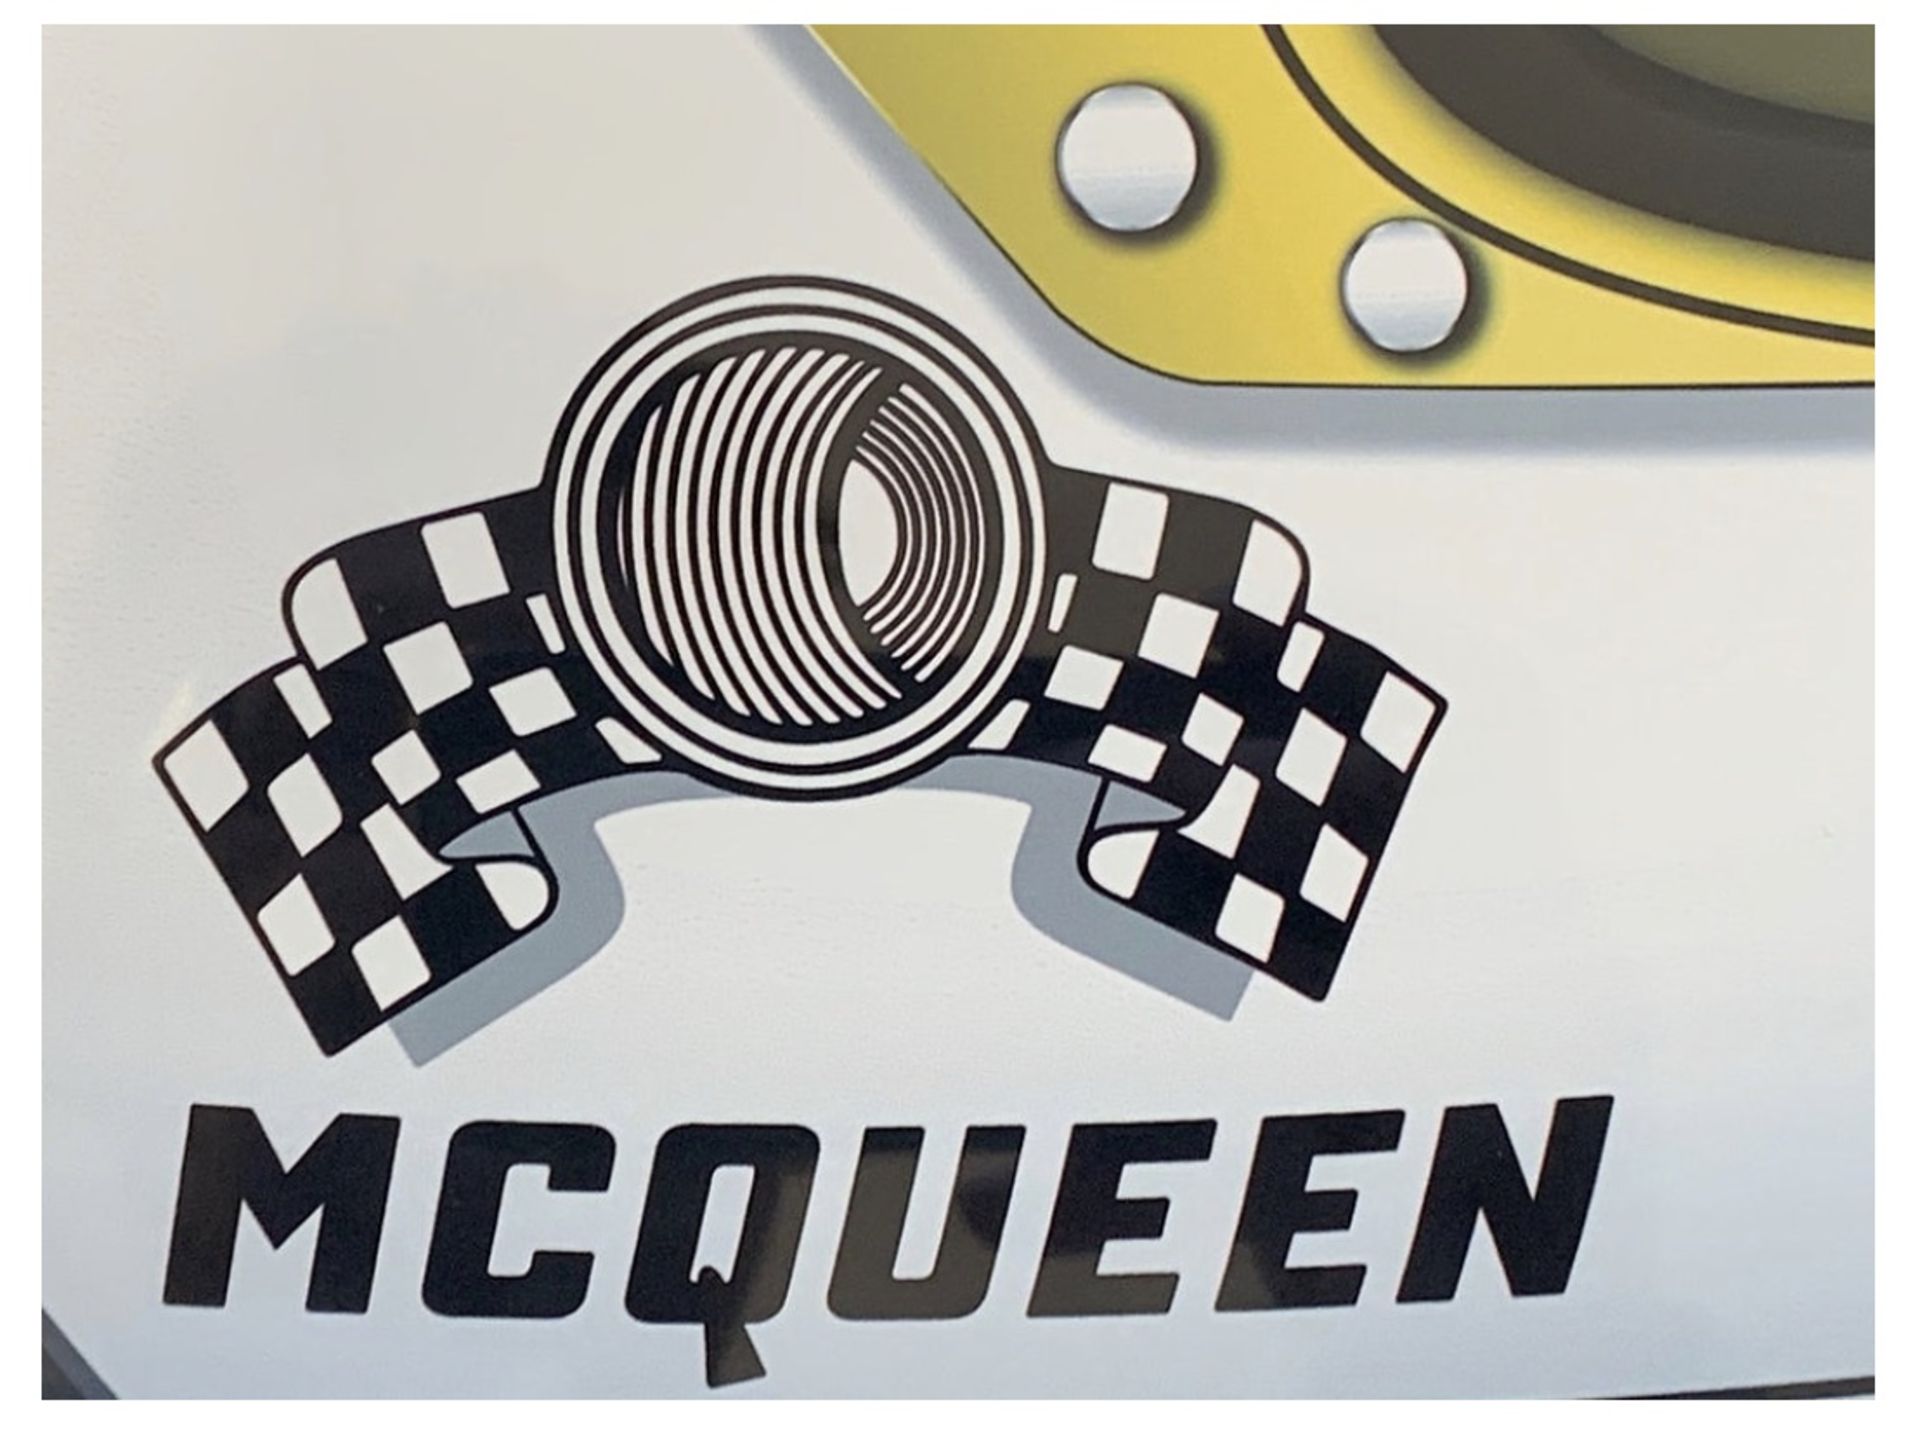 Steve McQueen Helmet Aluminum Wall Garage Display  - Image 4 of 4